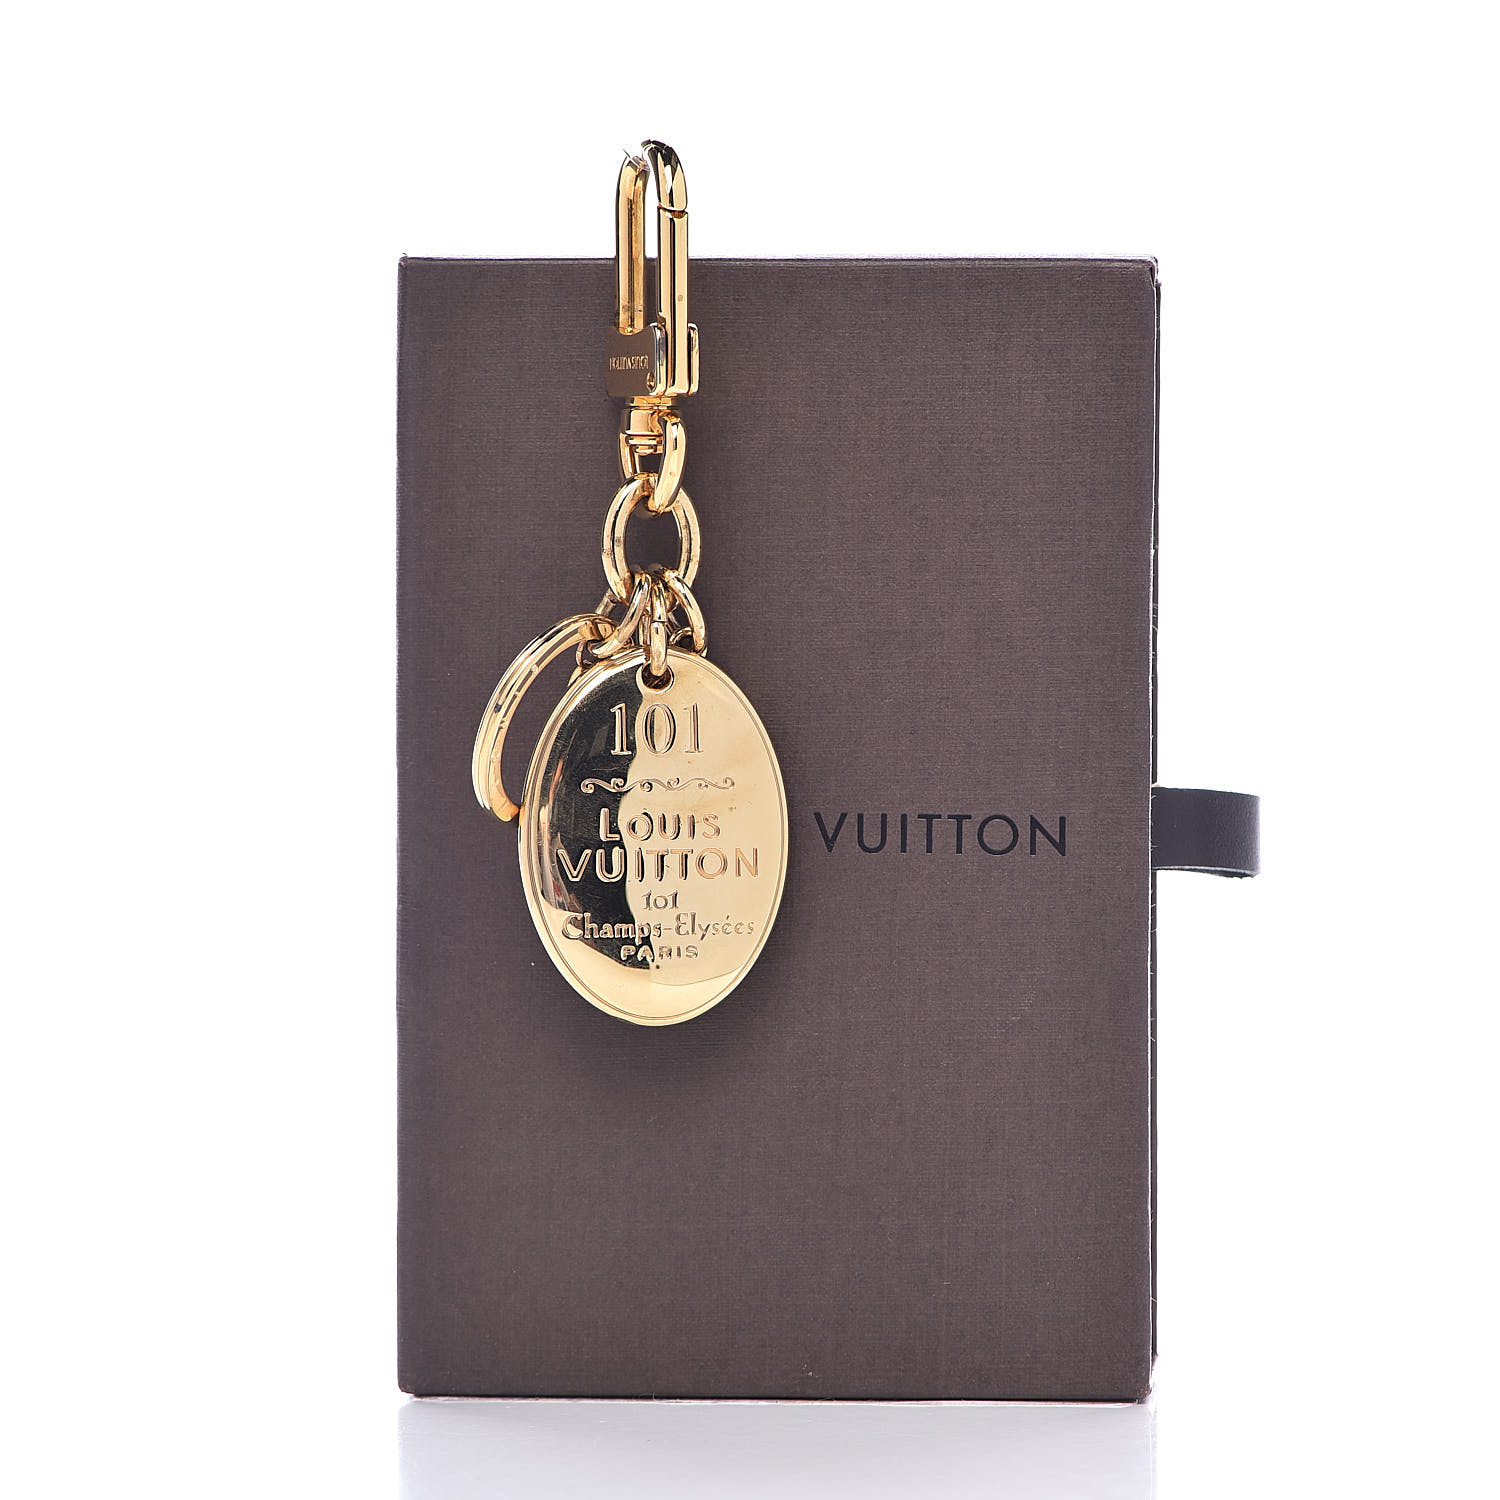 LOUIS VUITTON 101 Champs Elysees Maison Key Charm Gold 502793